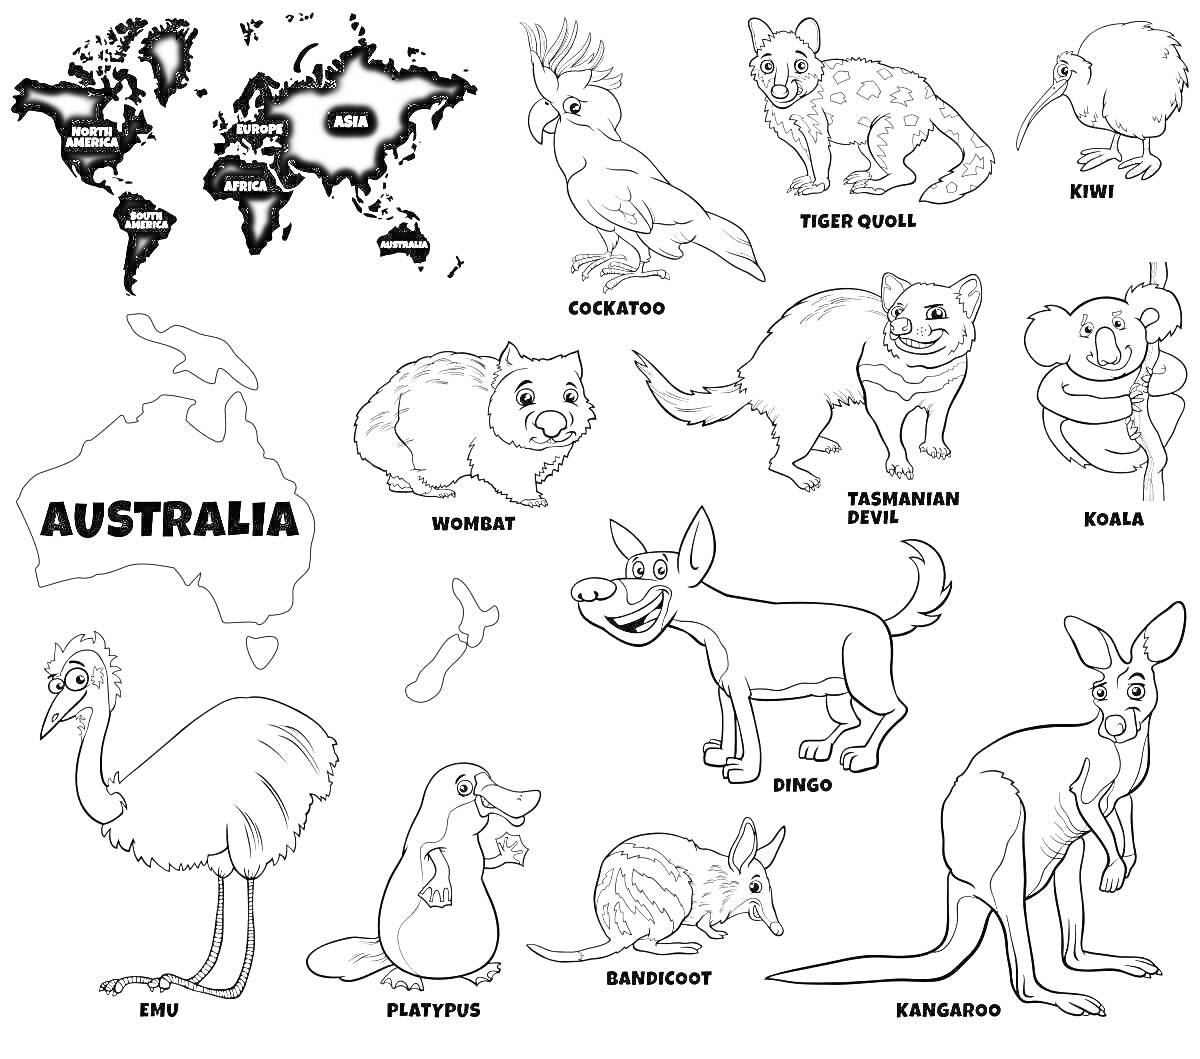 Раскраска Карта мира с Австралией, карта Австралии, какаду (Cockatoo), тасманский дьявол (Tasmanian Devil), коала (Koala), вомбат (Wombat), динго (Dingo), песчанка (Bandicoot), эму (Emu), утконос (Platypus), кенгуру (Kangaroo), морская свинка (предположительно) (пр